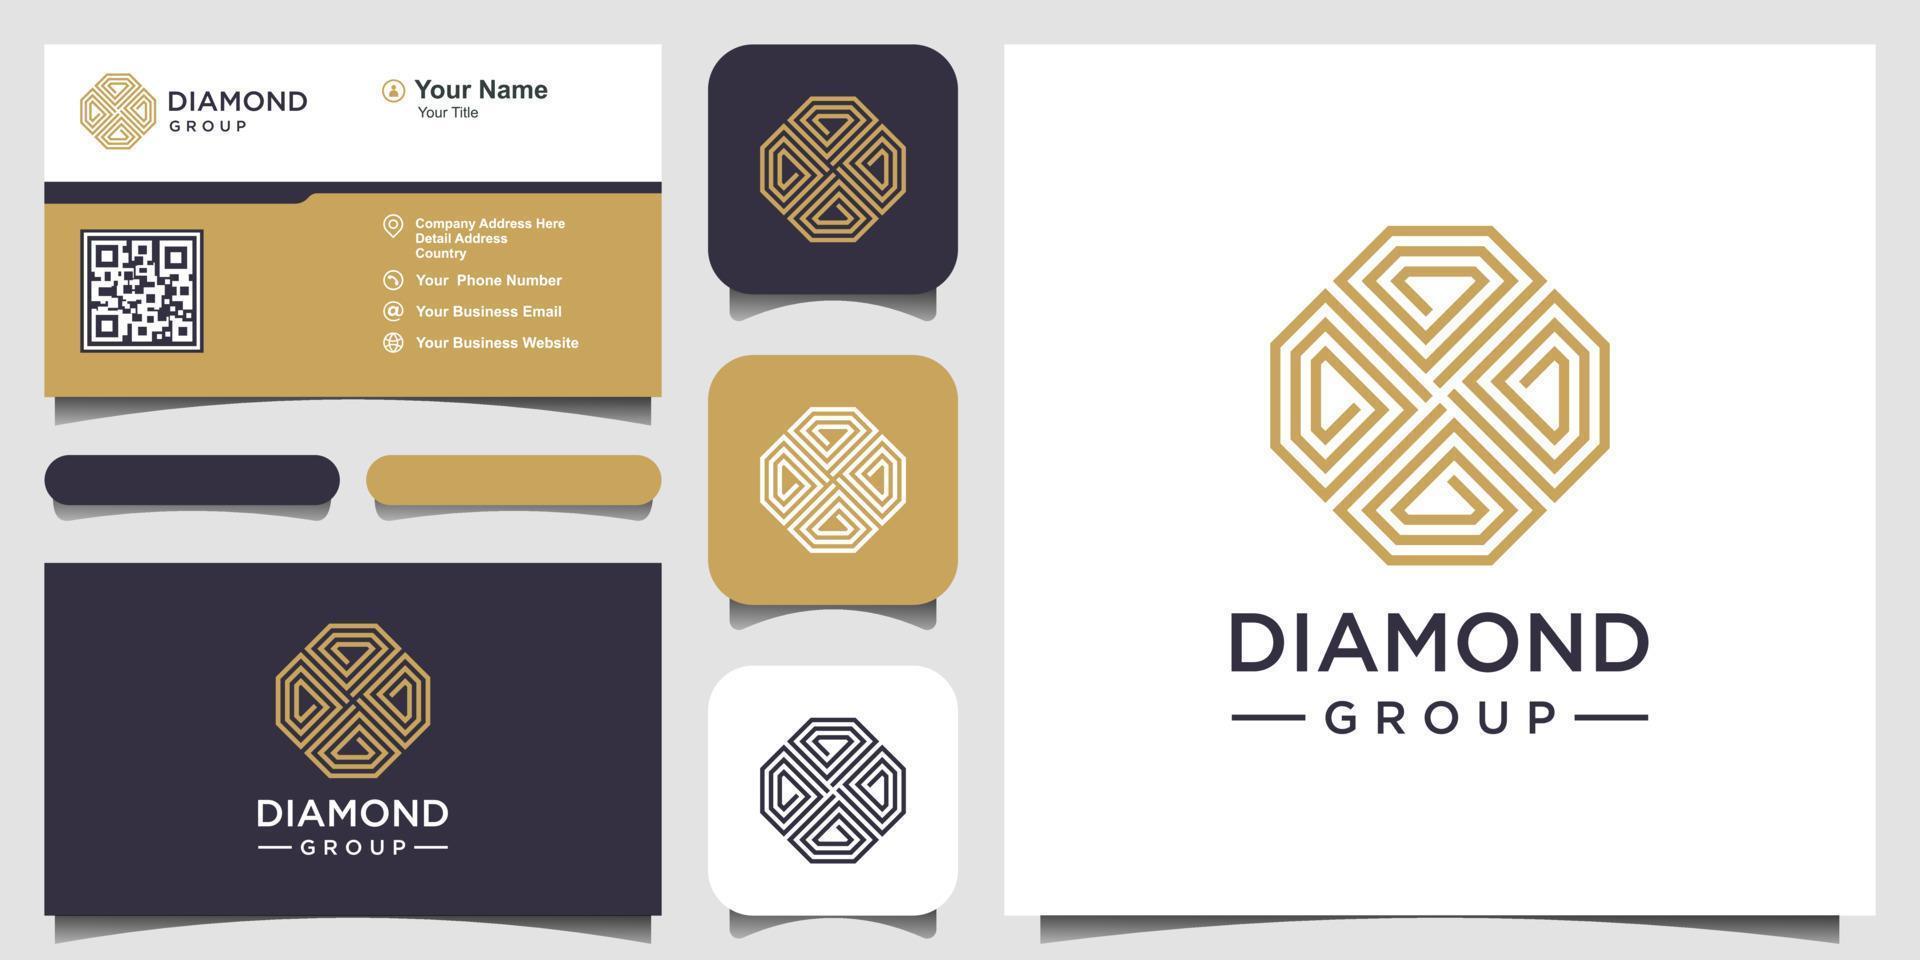 modelo de design de logotipo de conceito de diamante criativo e design de cartão de visita. grupo diamante, equipe, comunidade vetor